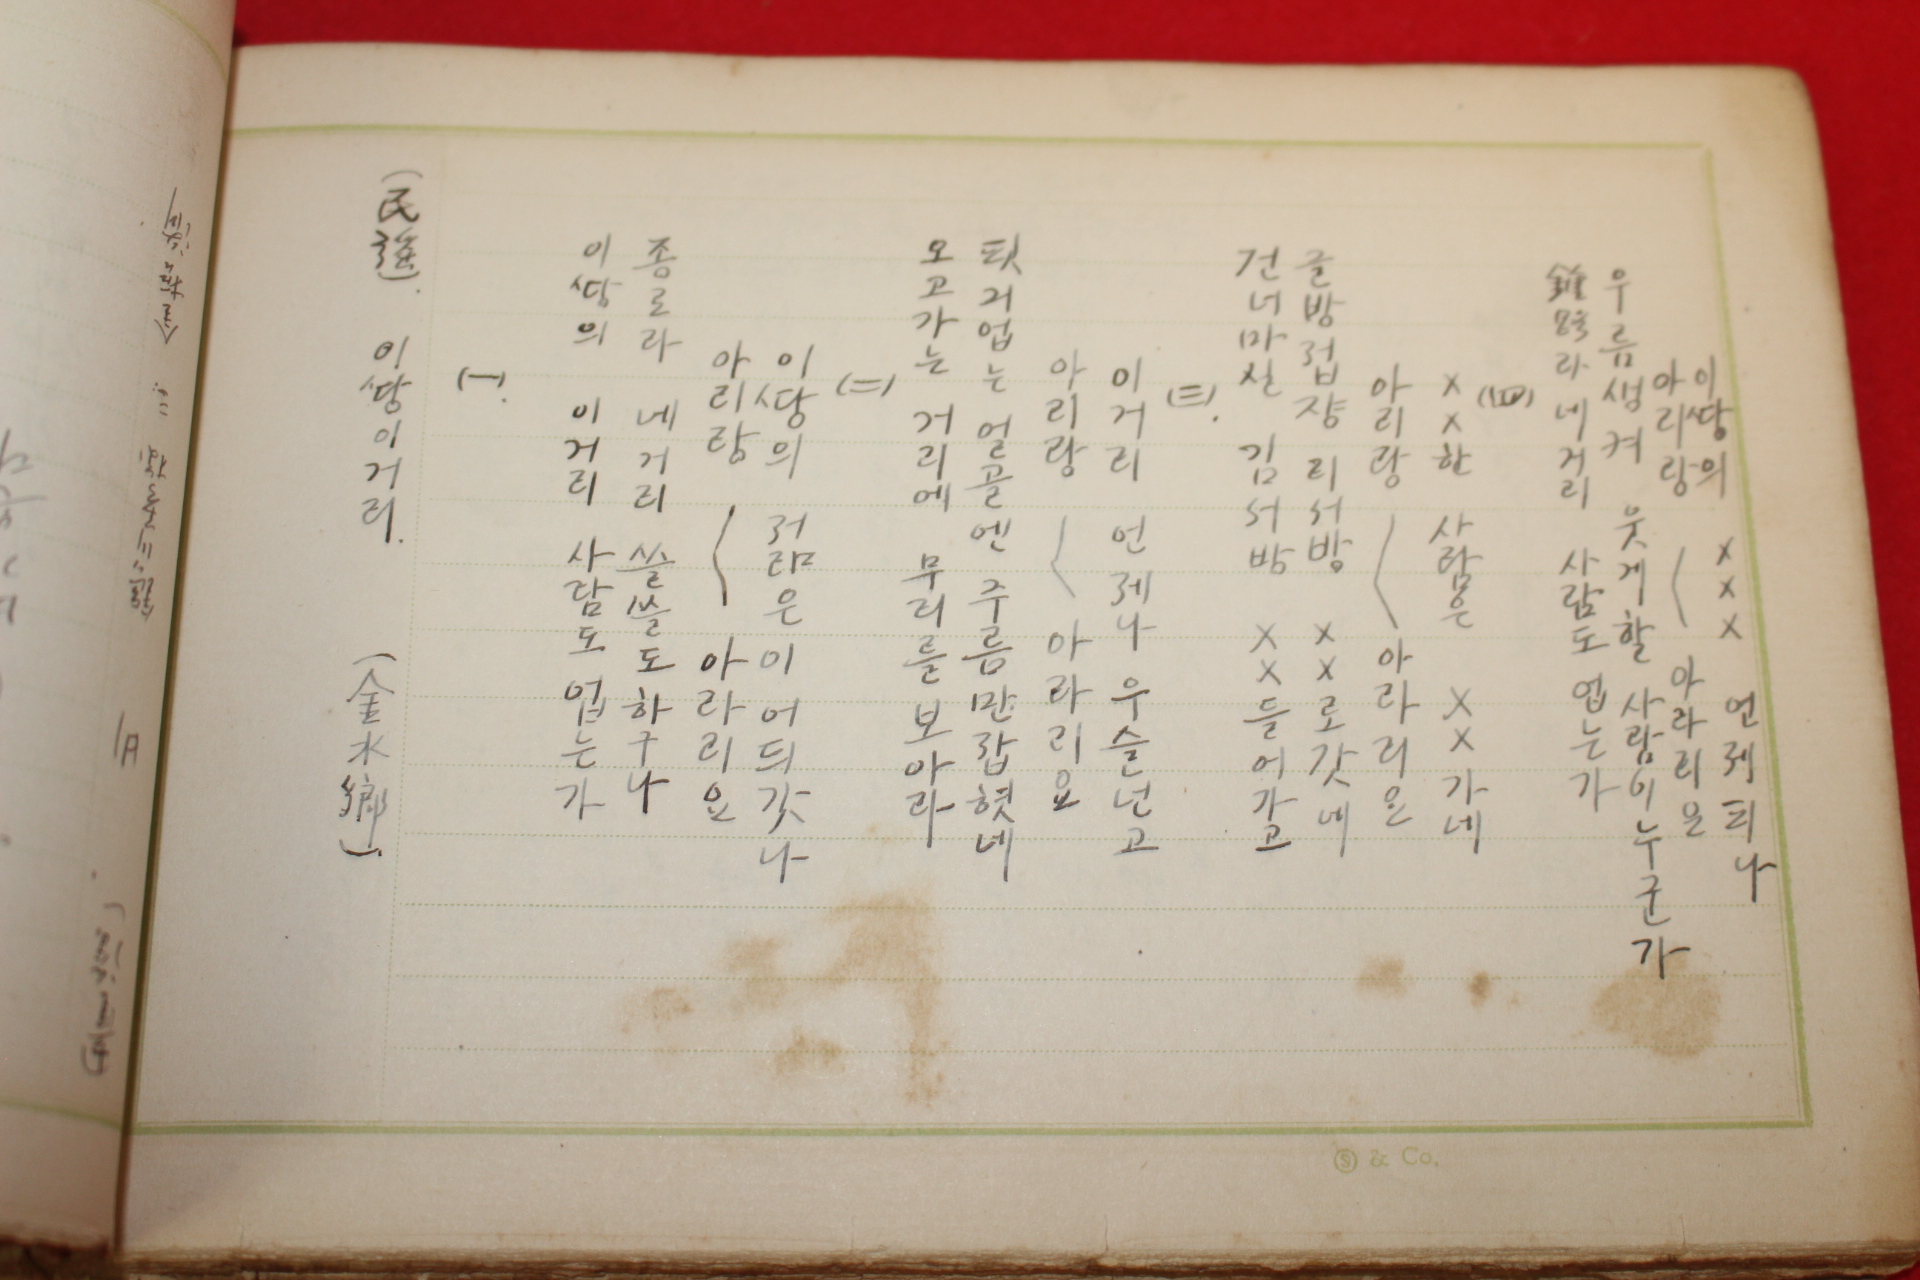 1933년 김종석(金宗錫) 미발간원고본 조선민요,조선동요선집